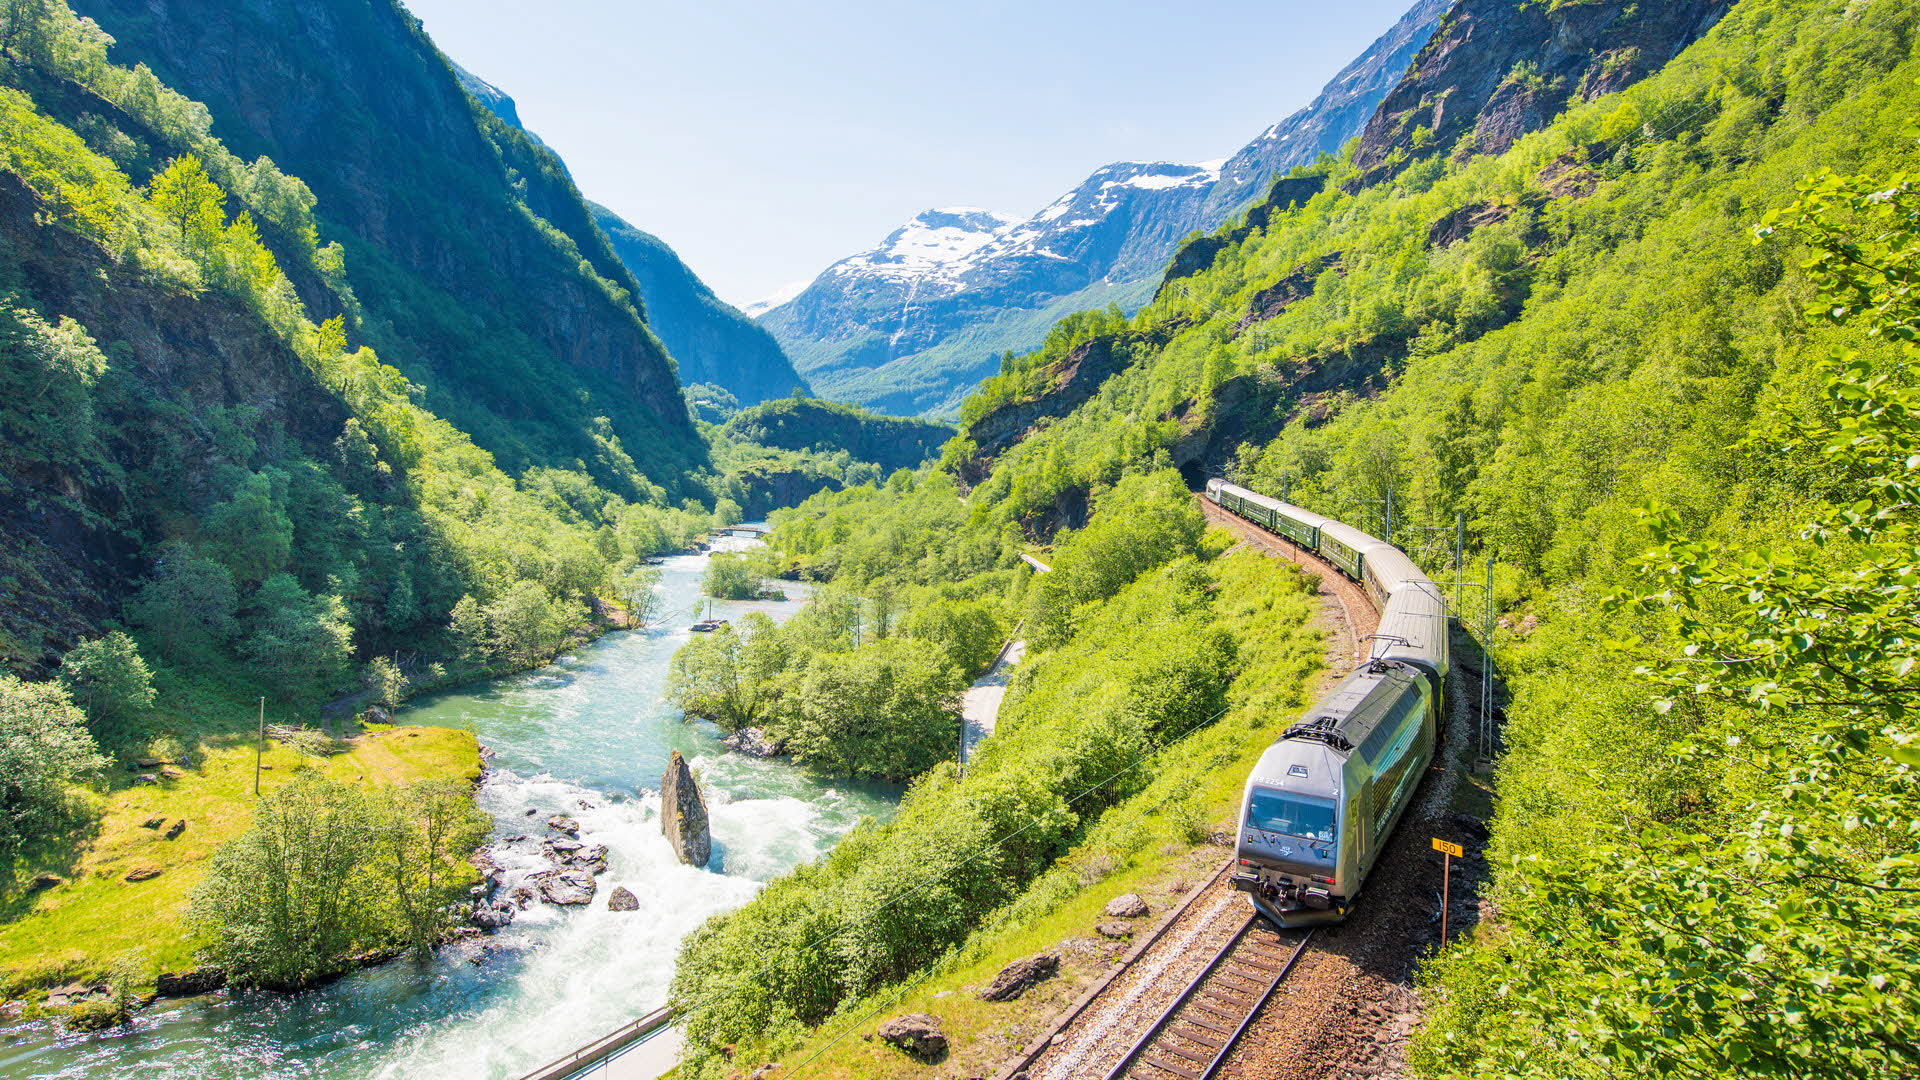 Le train de Flåm descendant dans la vallée de Flåm en été, avec pour cadre des collines verdoyantes et des sommets enneigés